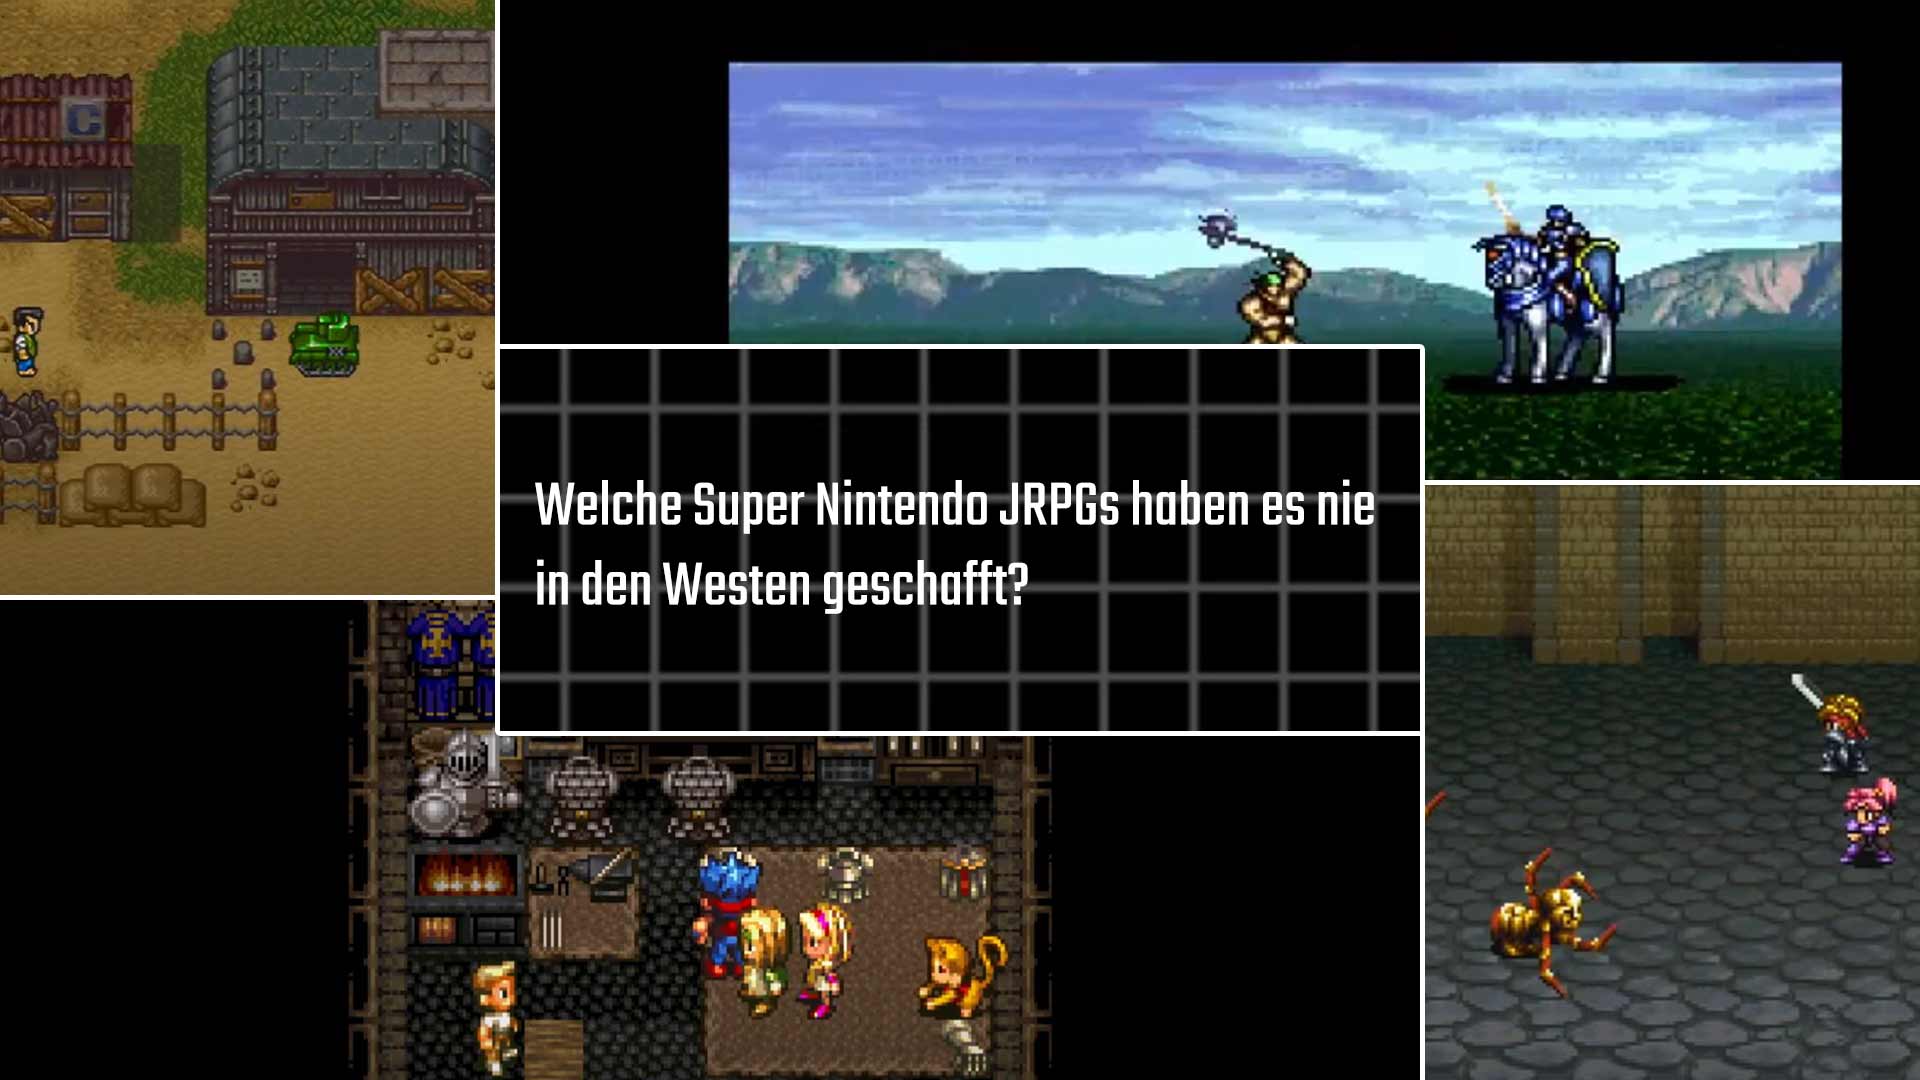 SNES: Welche Super Nintendo JRPGs haben es nie in den Westen geschafft?